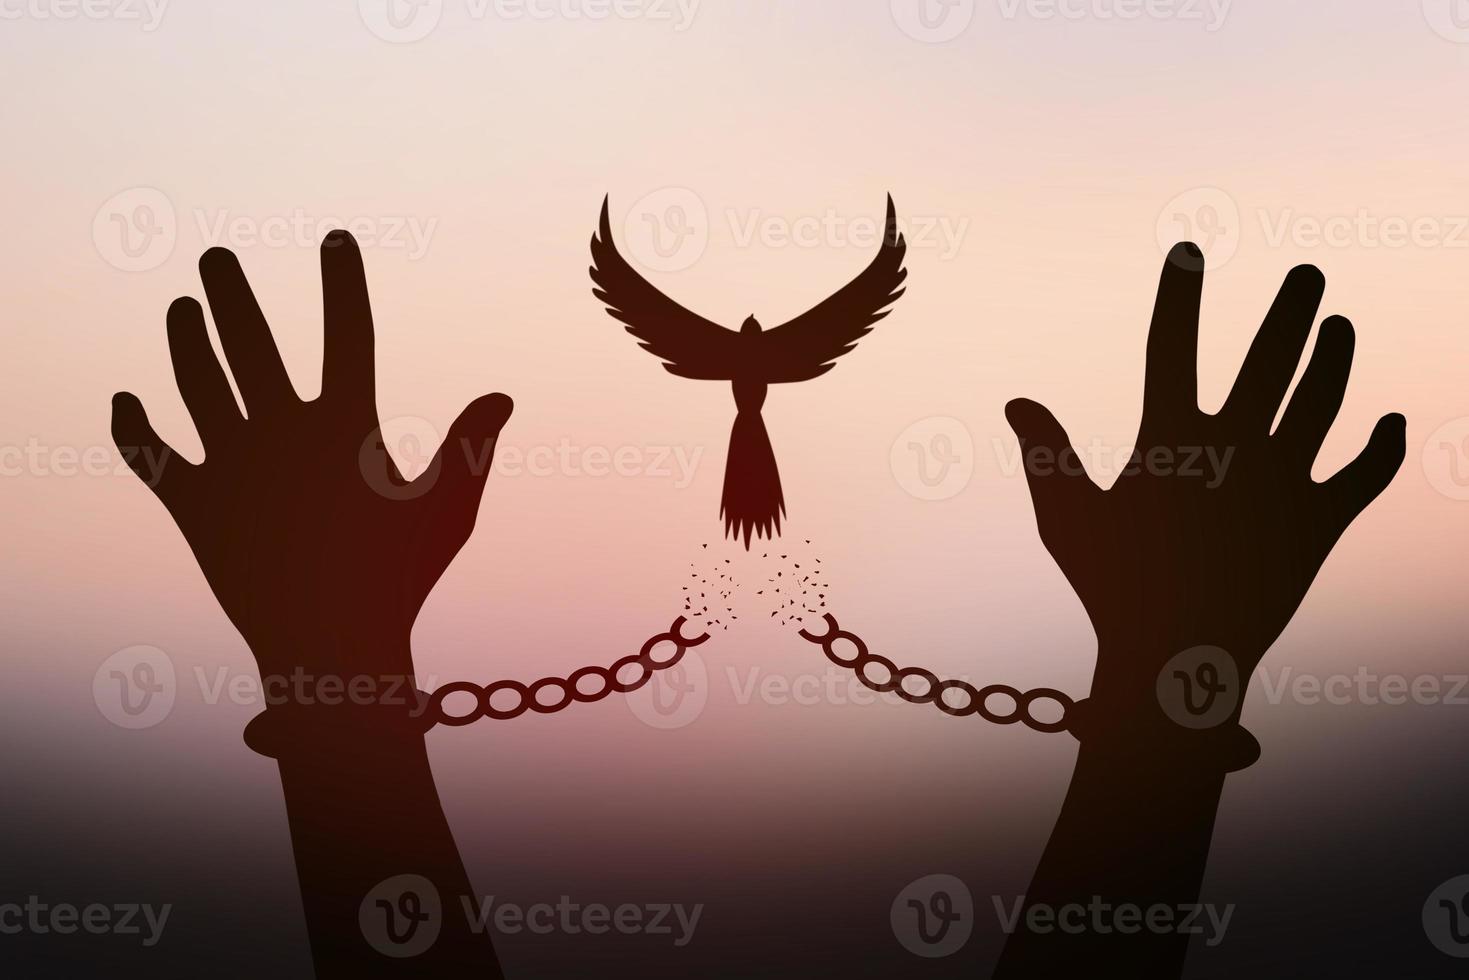 concepto de libertad. la sombra de una paloma se libera de las cadenas que atan los brazos humanos. fondo de sol dorado en la mañana foto